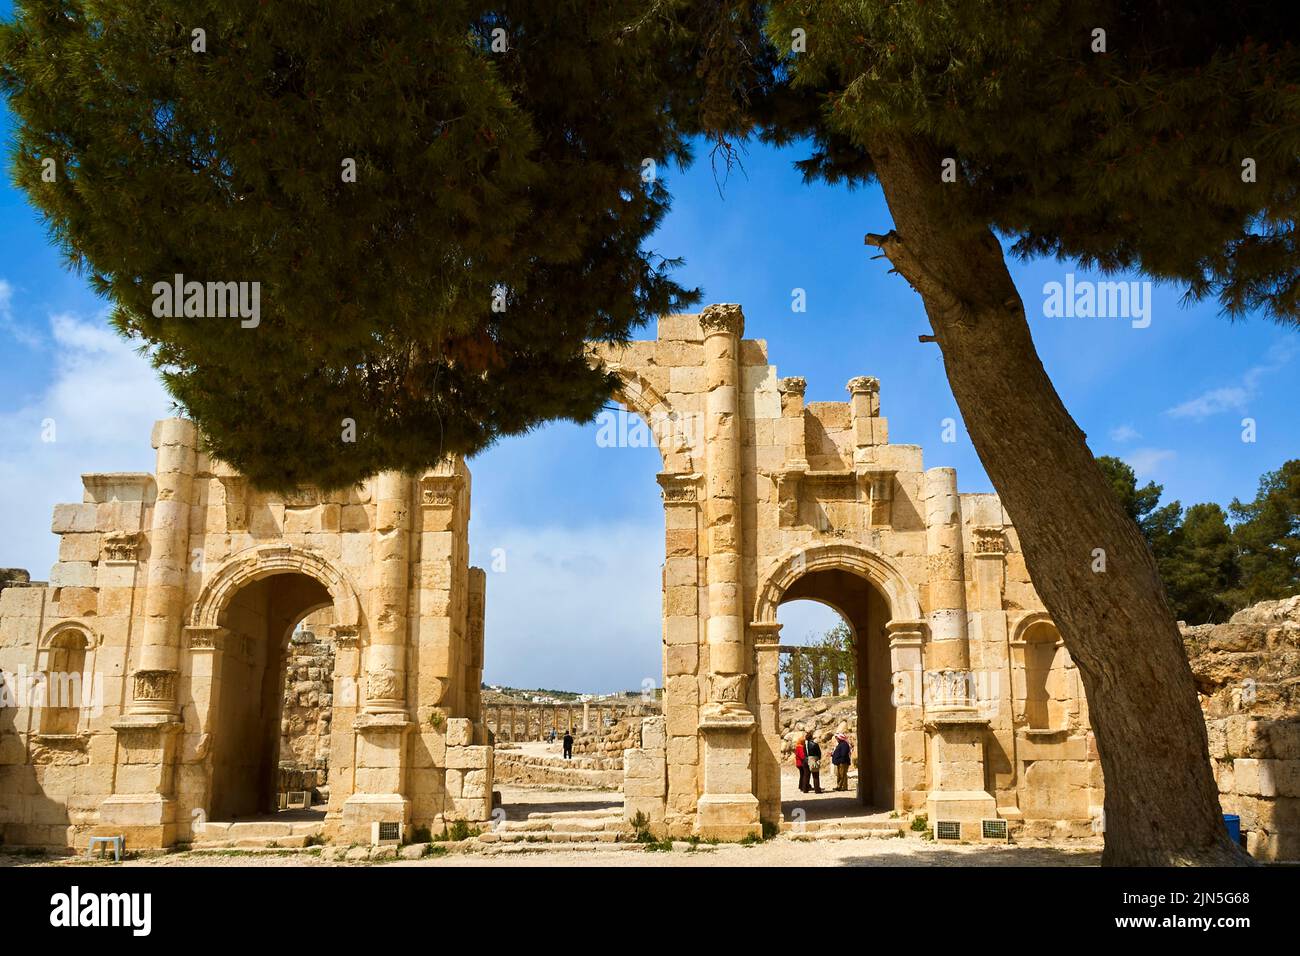 Jordania, sitio arqueológico de Jerash Foto de stock